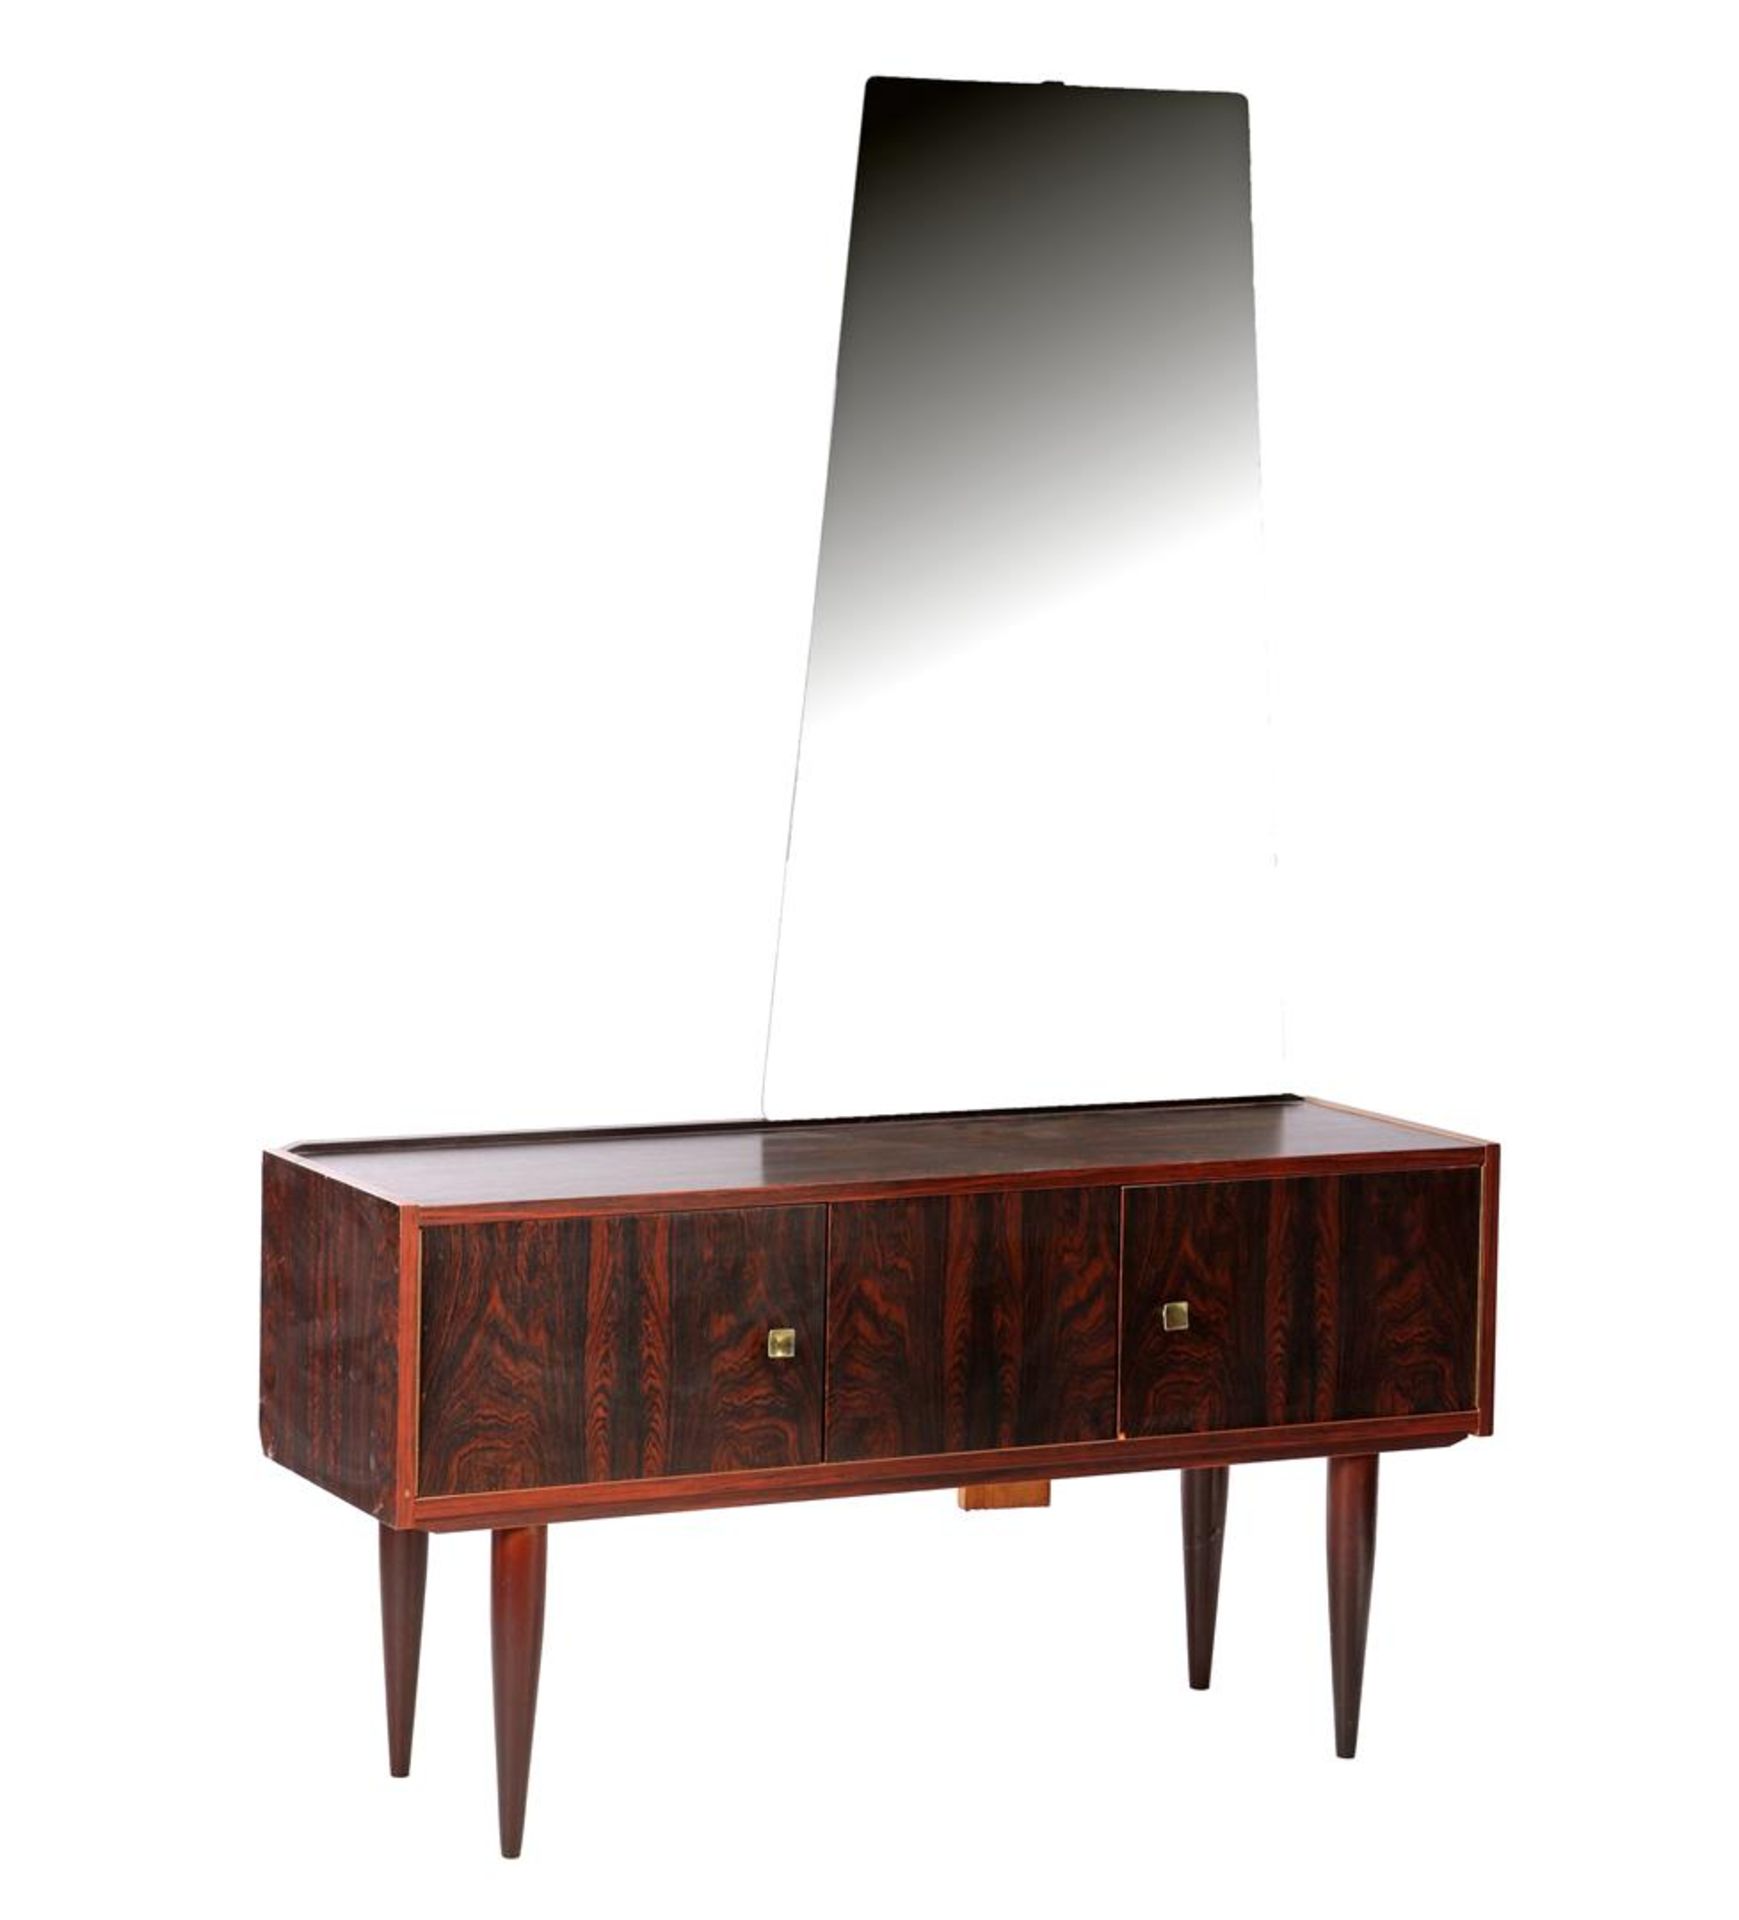 2-door rosewood veneer toilet furniture with mirror upstand